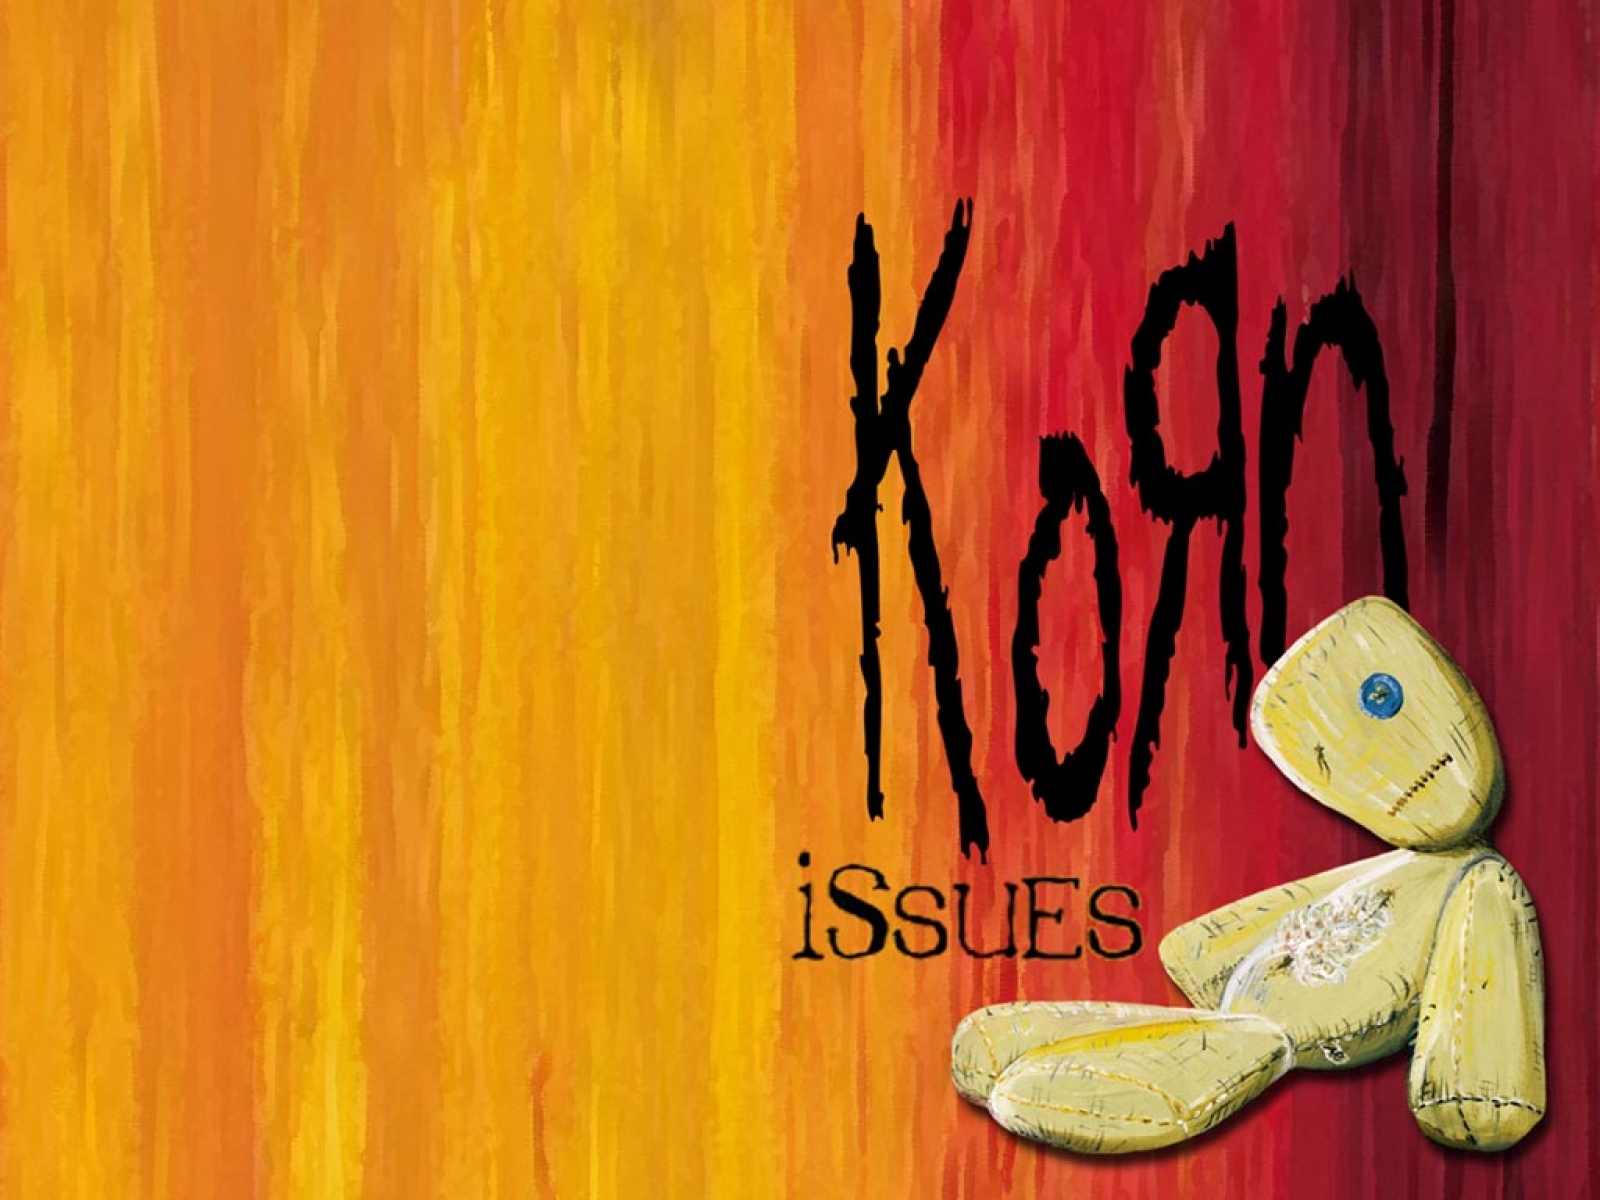 Korn Issues Wallpaper Image Wallpaperlepi